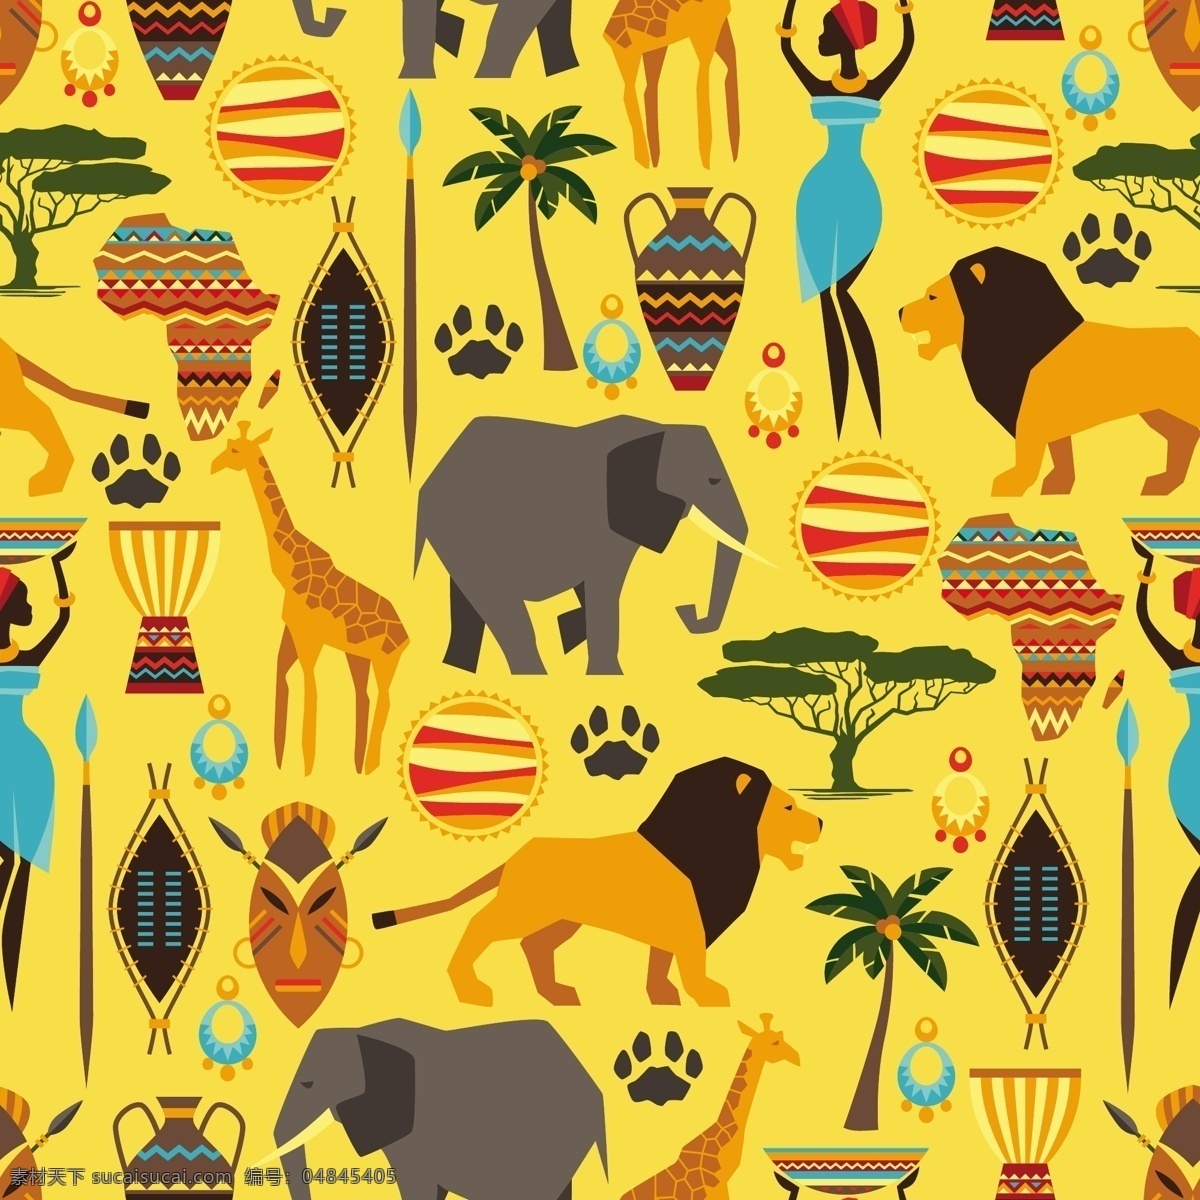 非洲 风格 矢量 无缝 背景 图 动物 人物 异域风情 非洲风格 非洲特色 矢量图 花纹花边